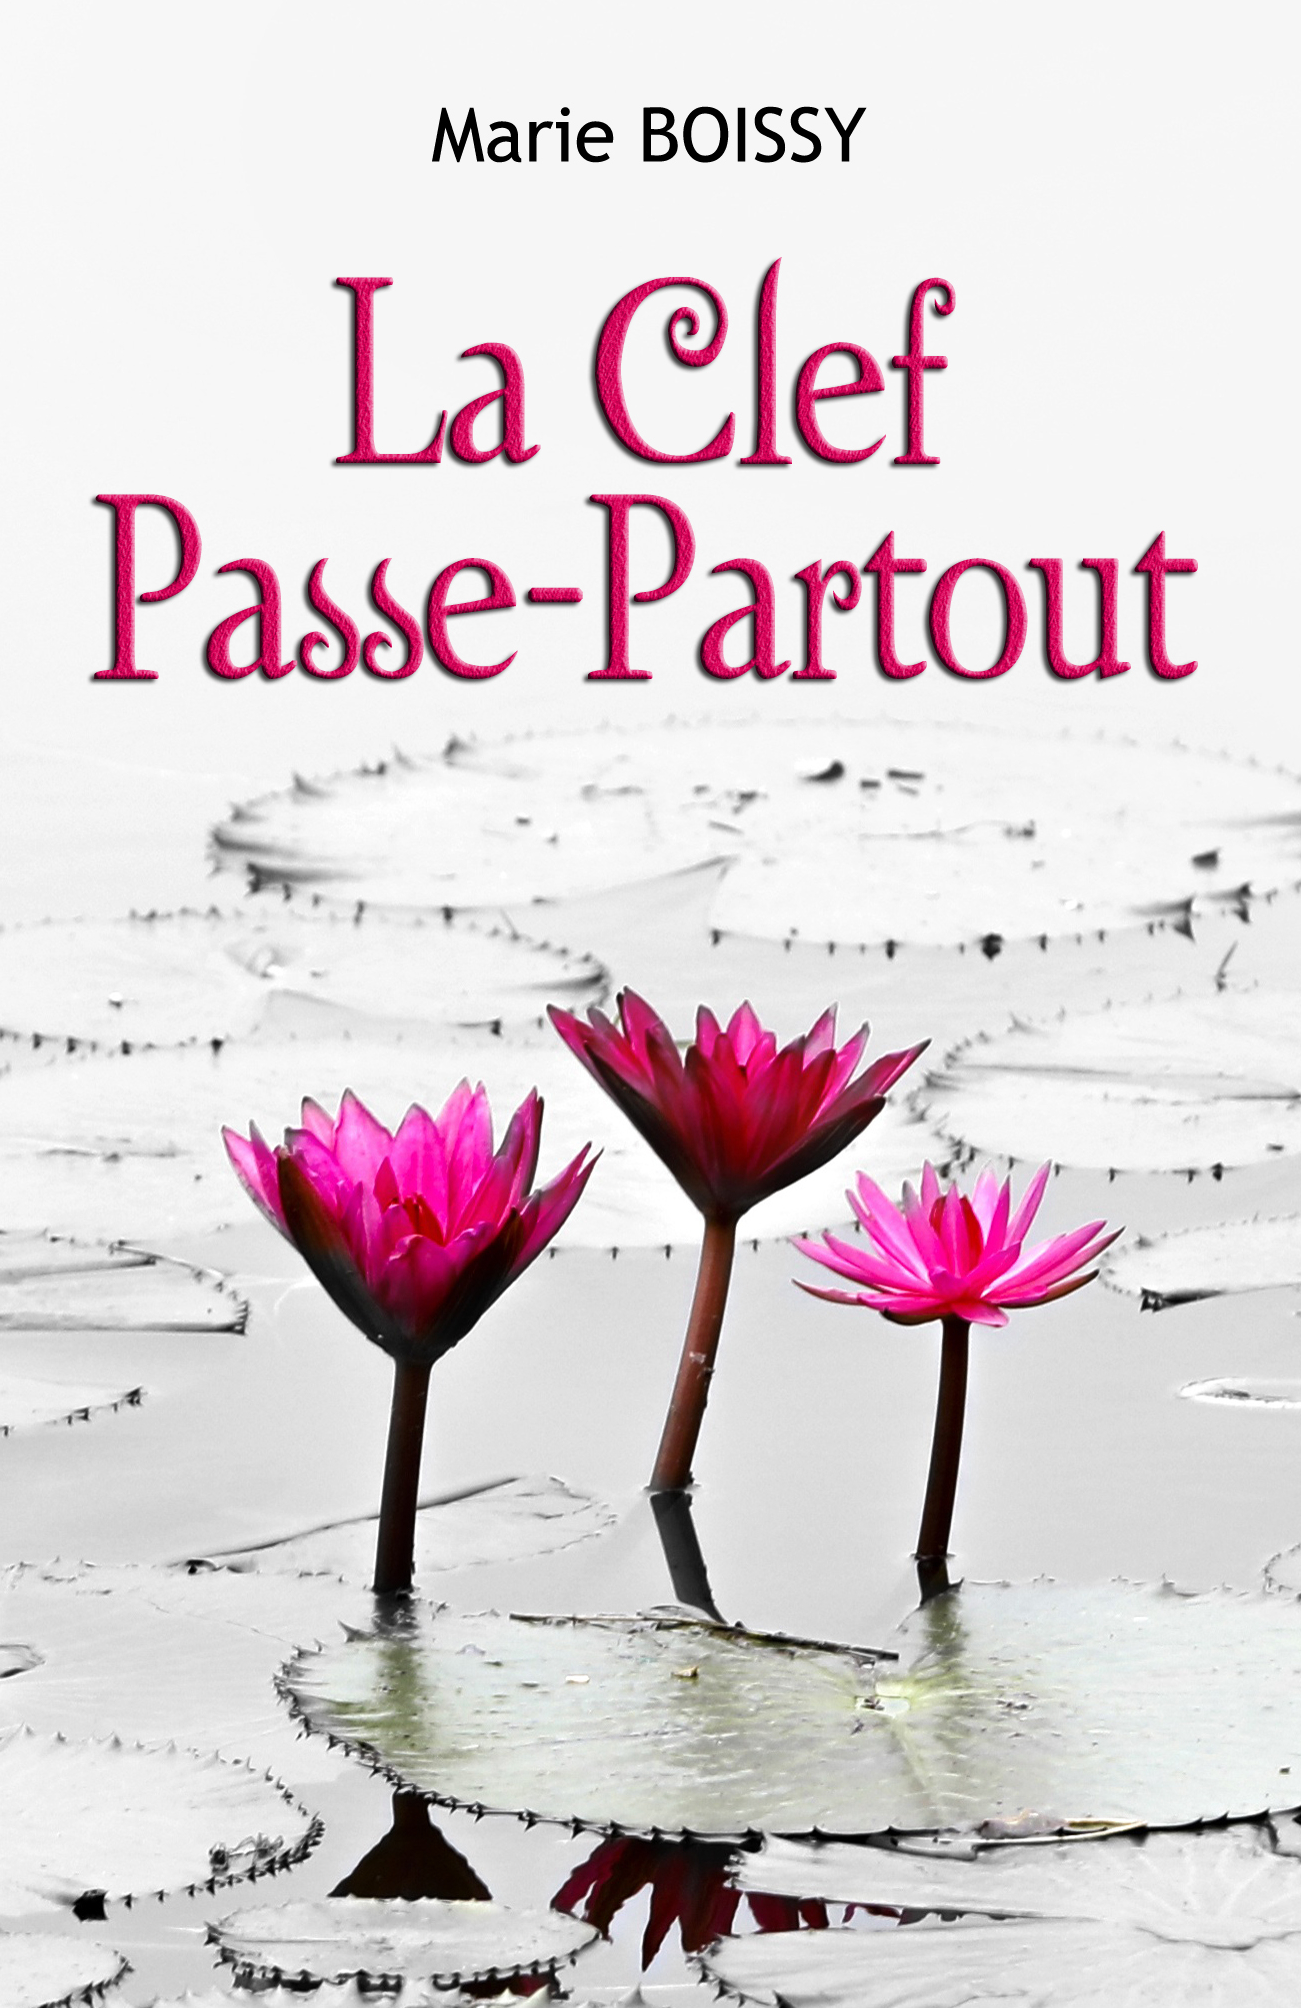 LA CLEF PASSE-PARTOUT - Marie BOISSY